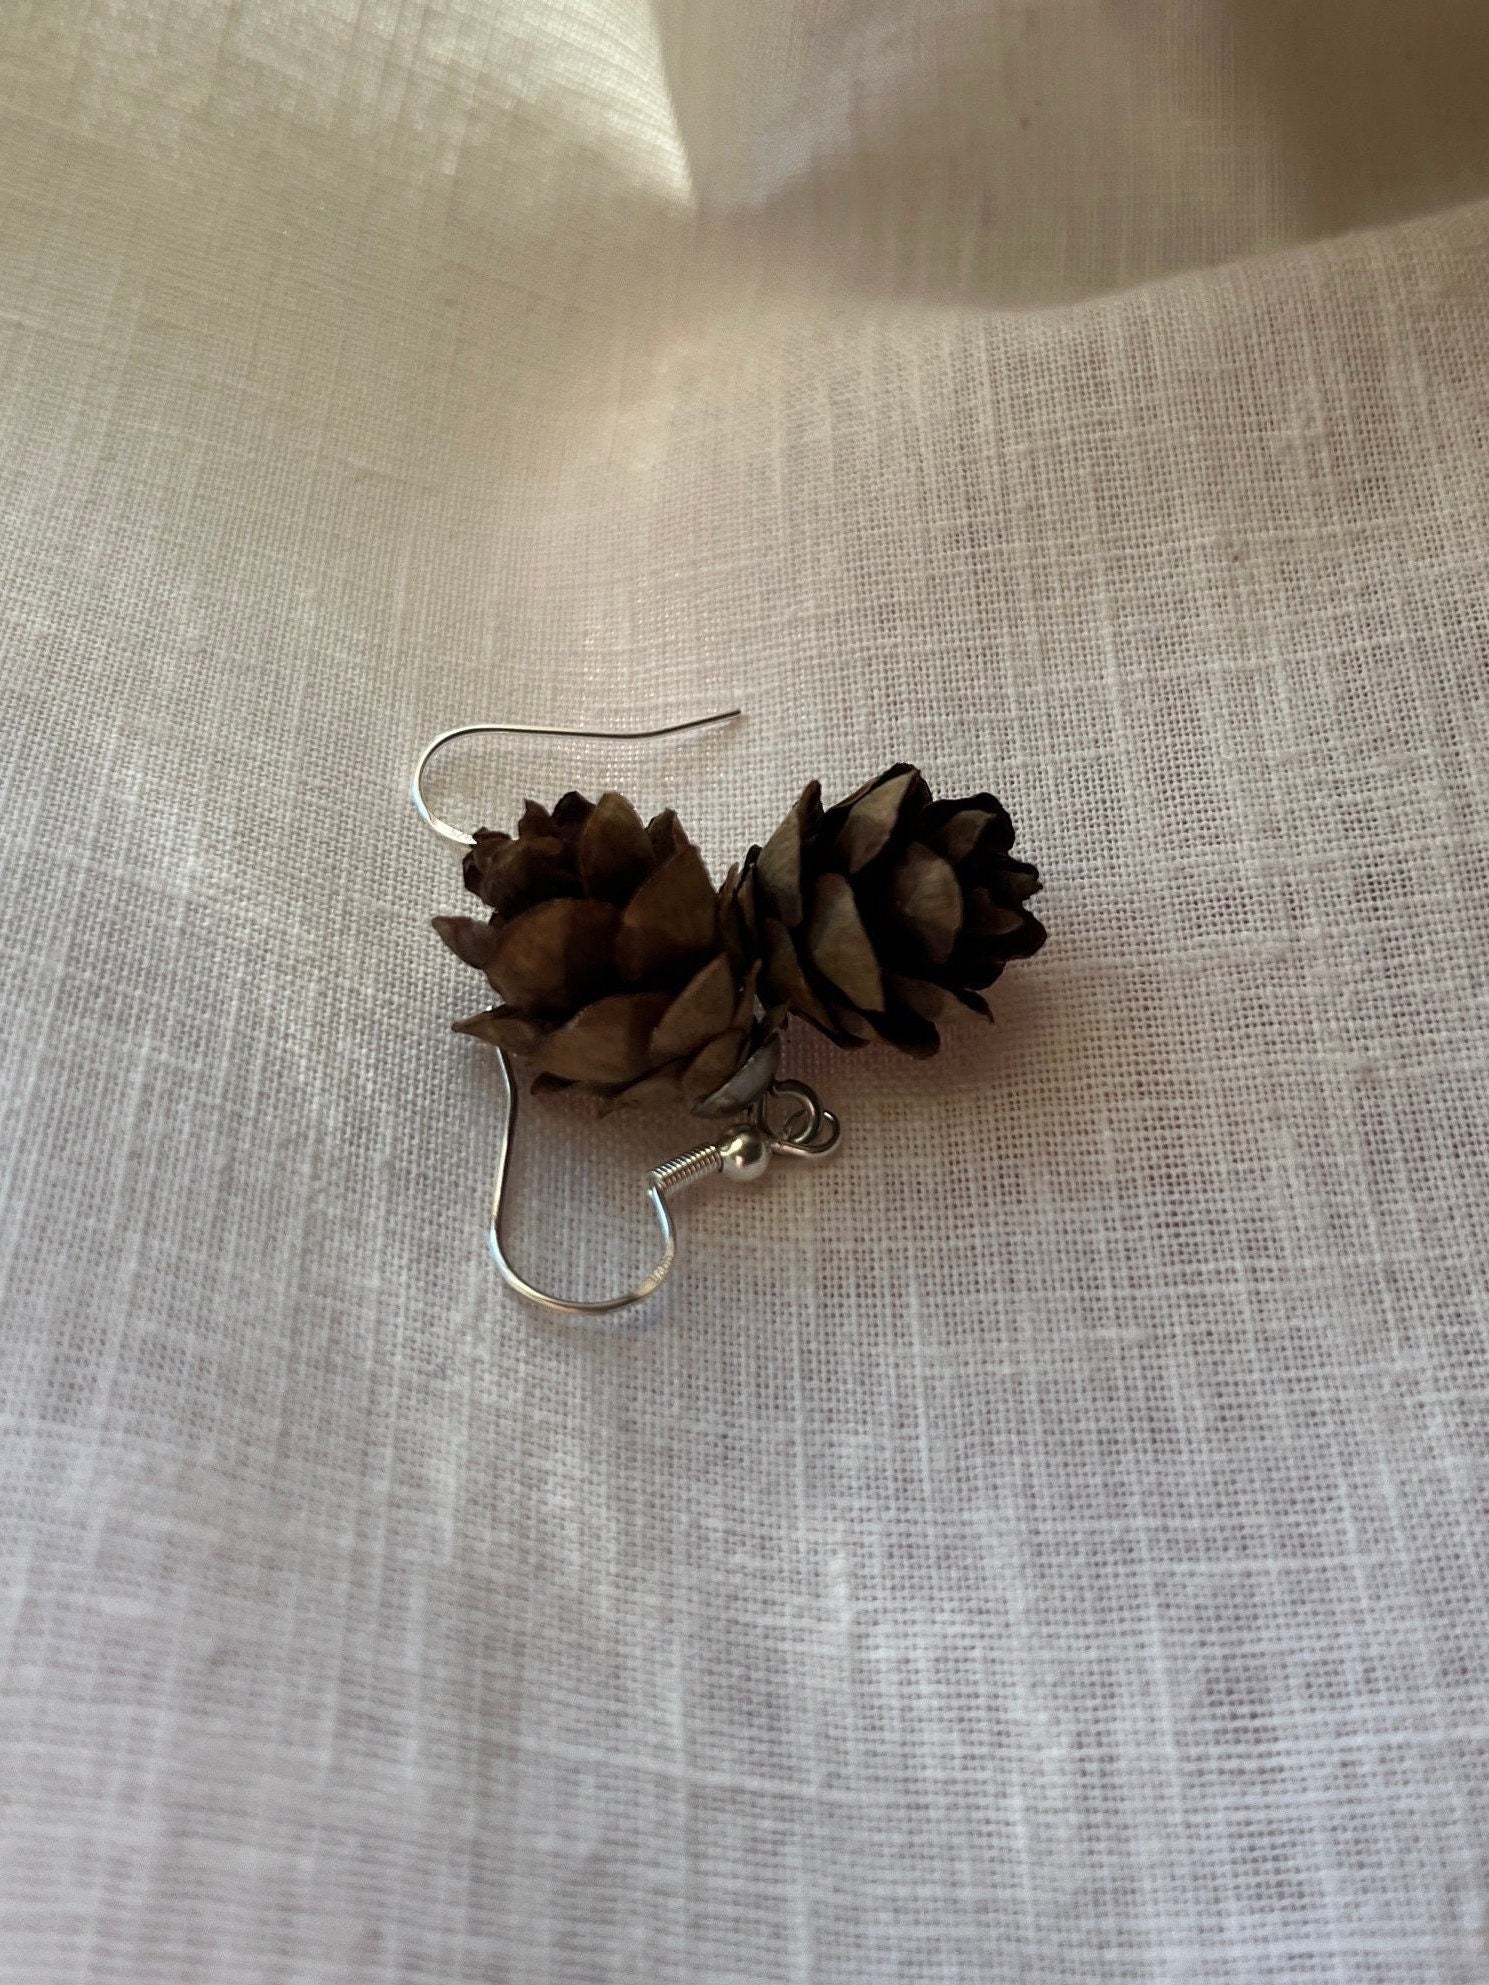 mini pine cone earrings on linen